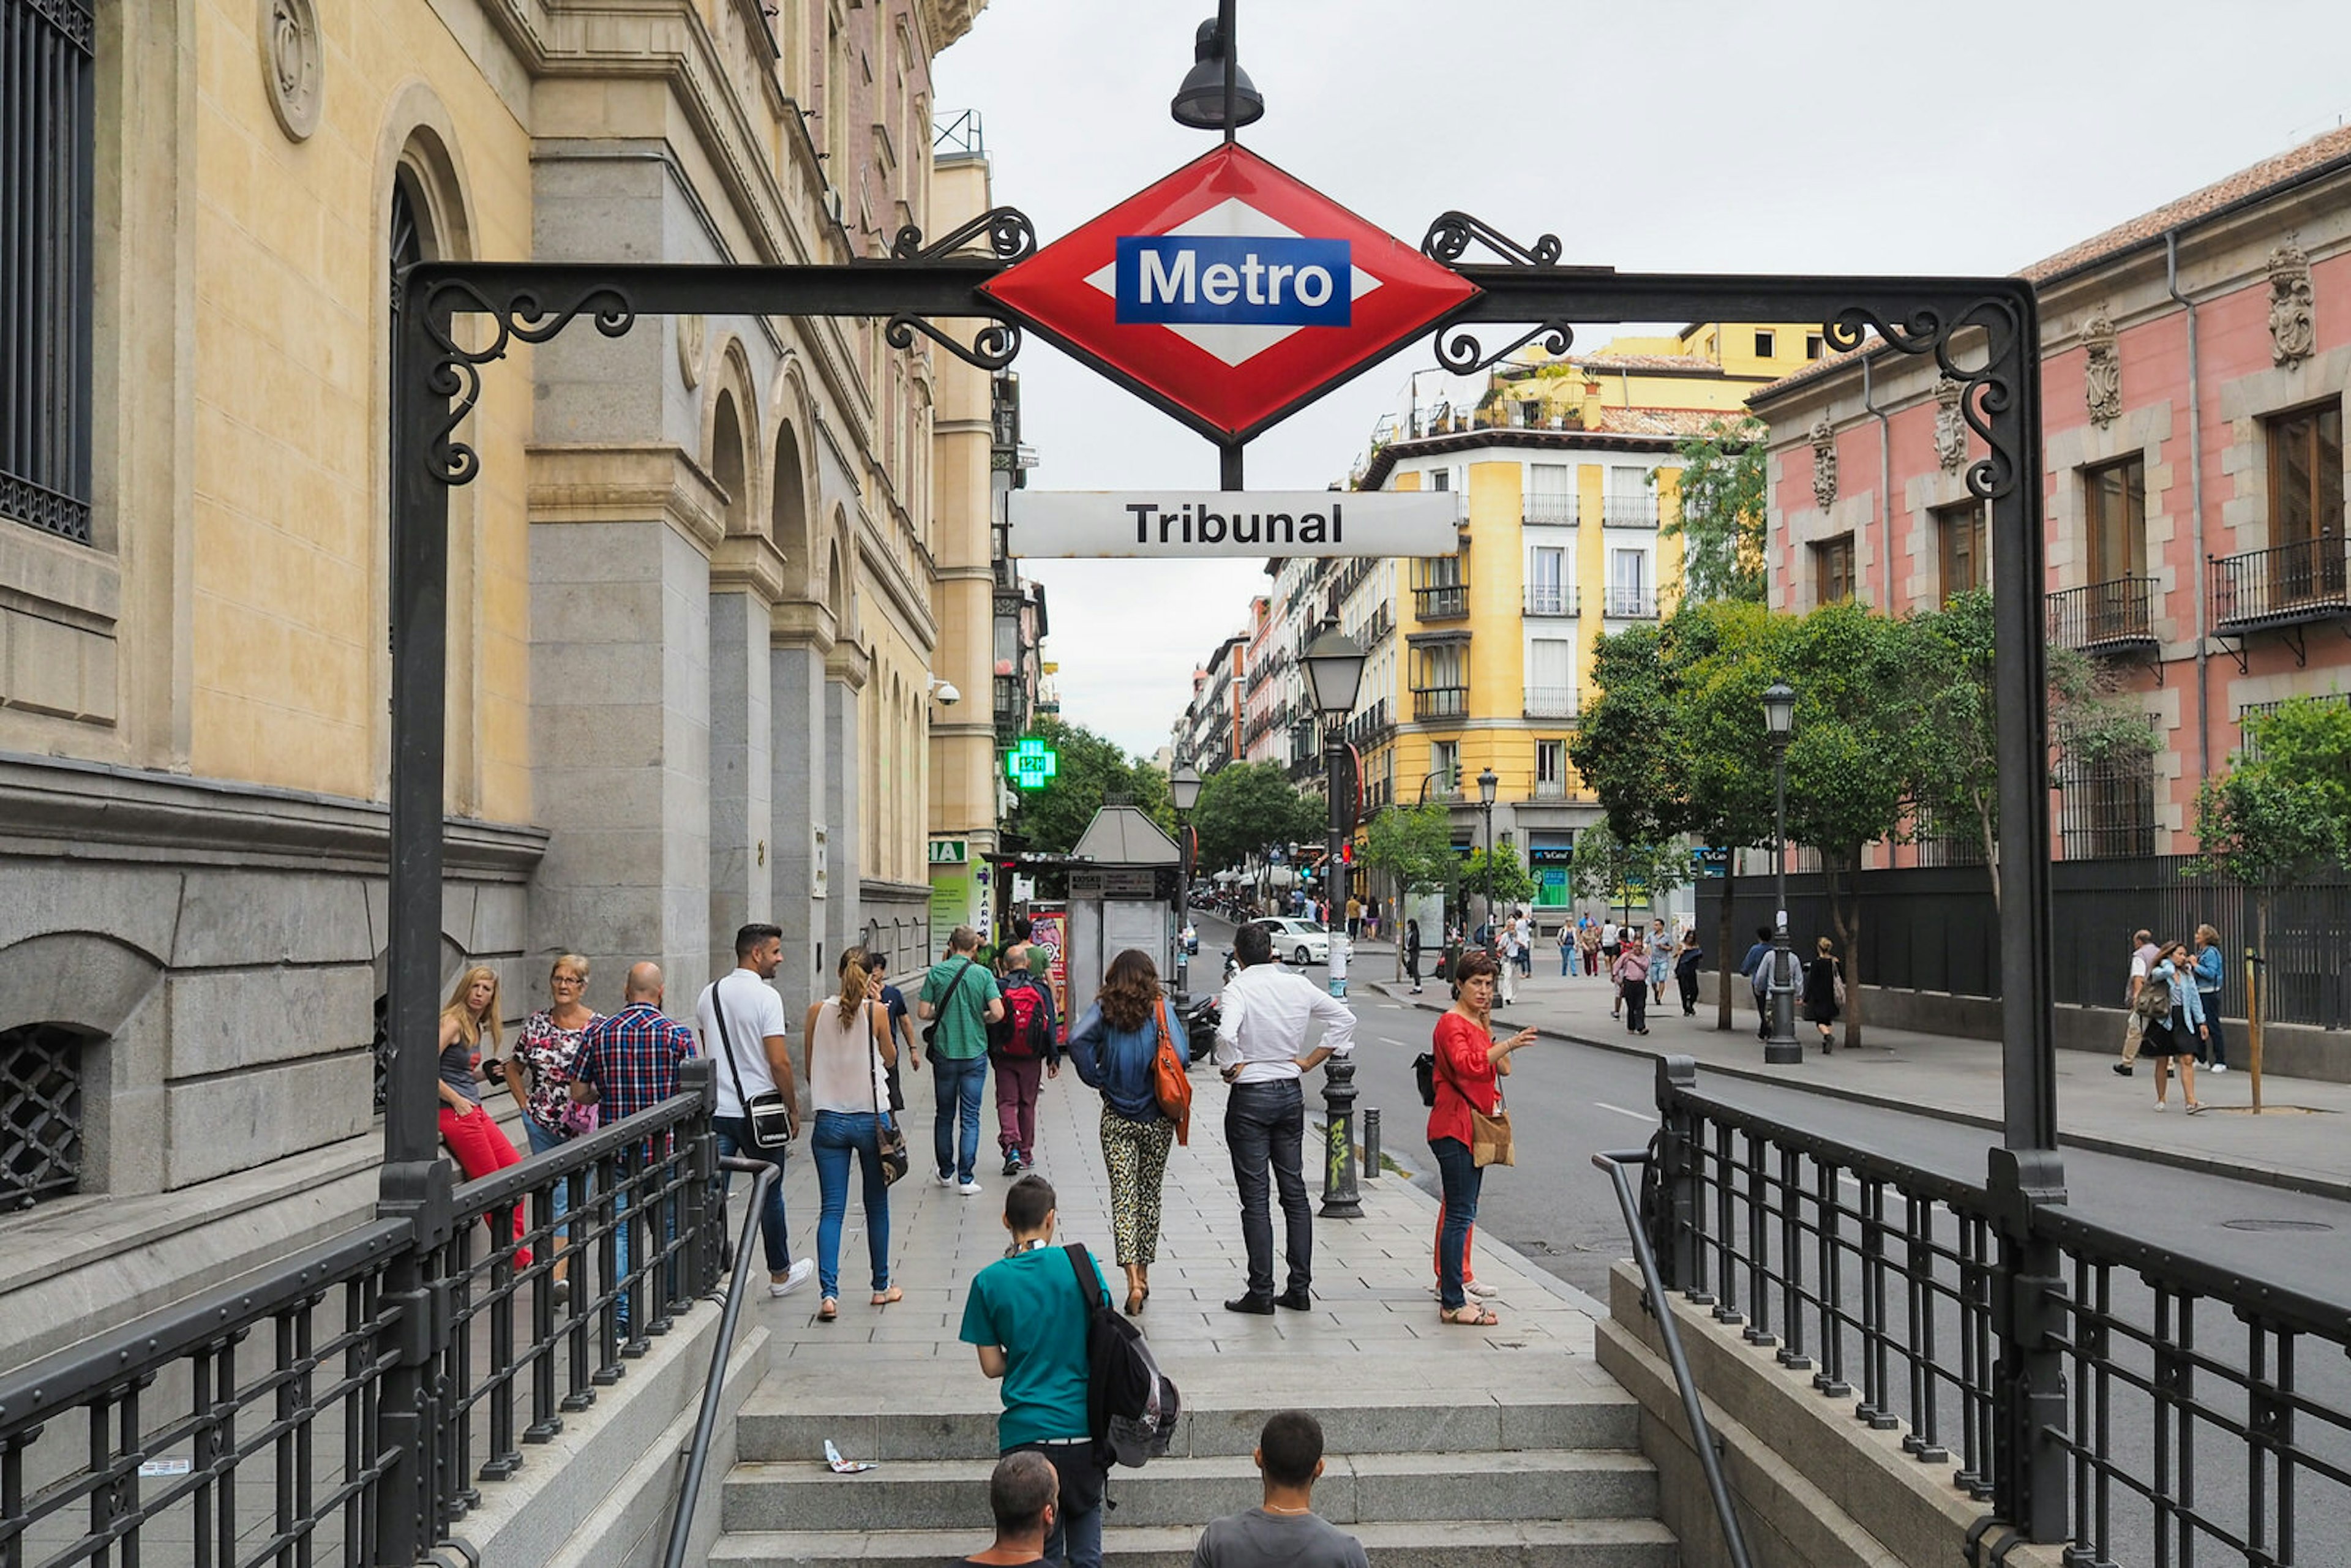 Tribunal Metro stop in Madrid, Spain